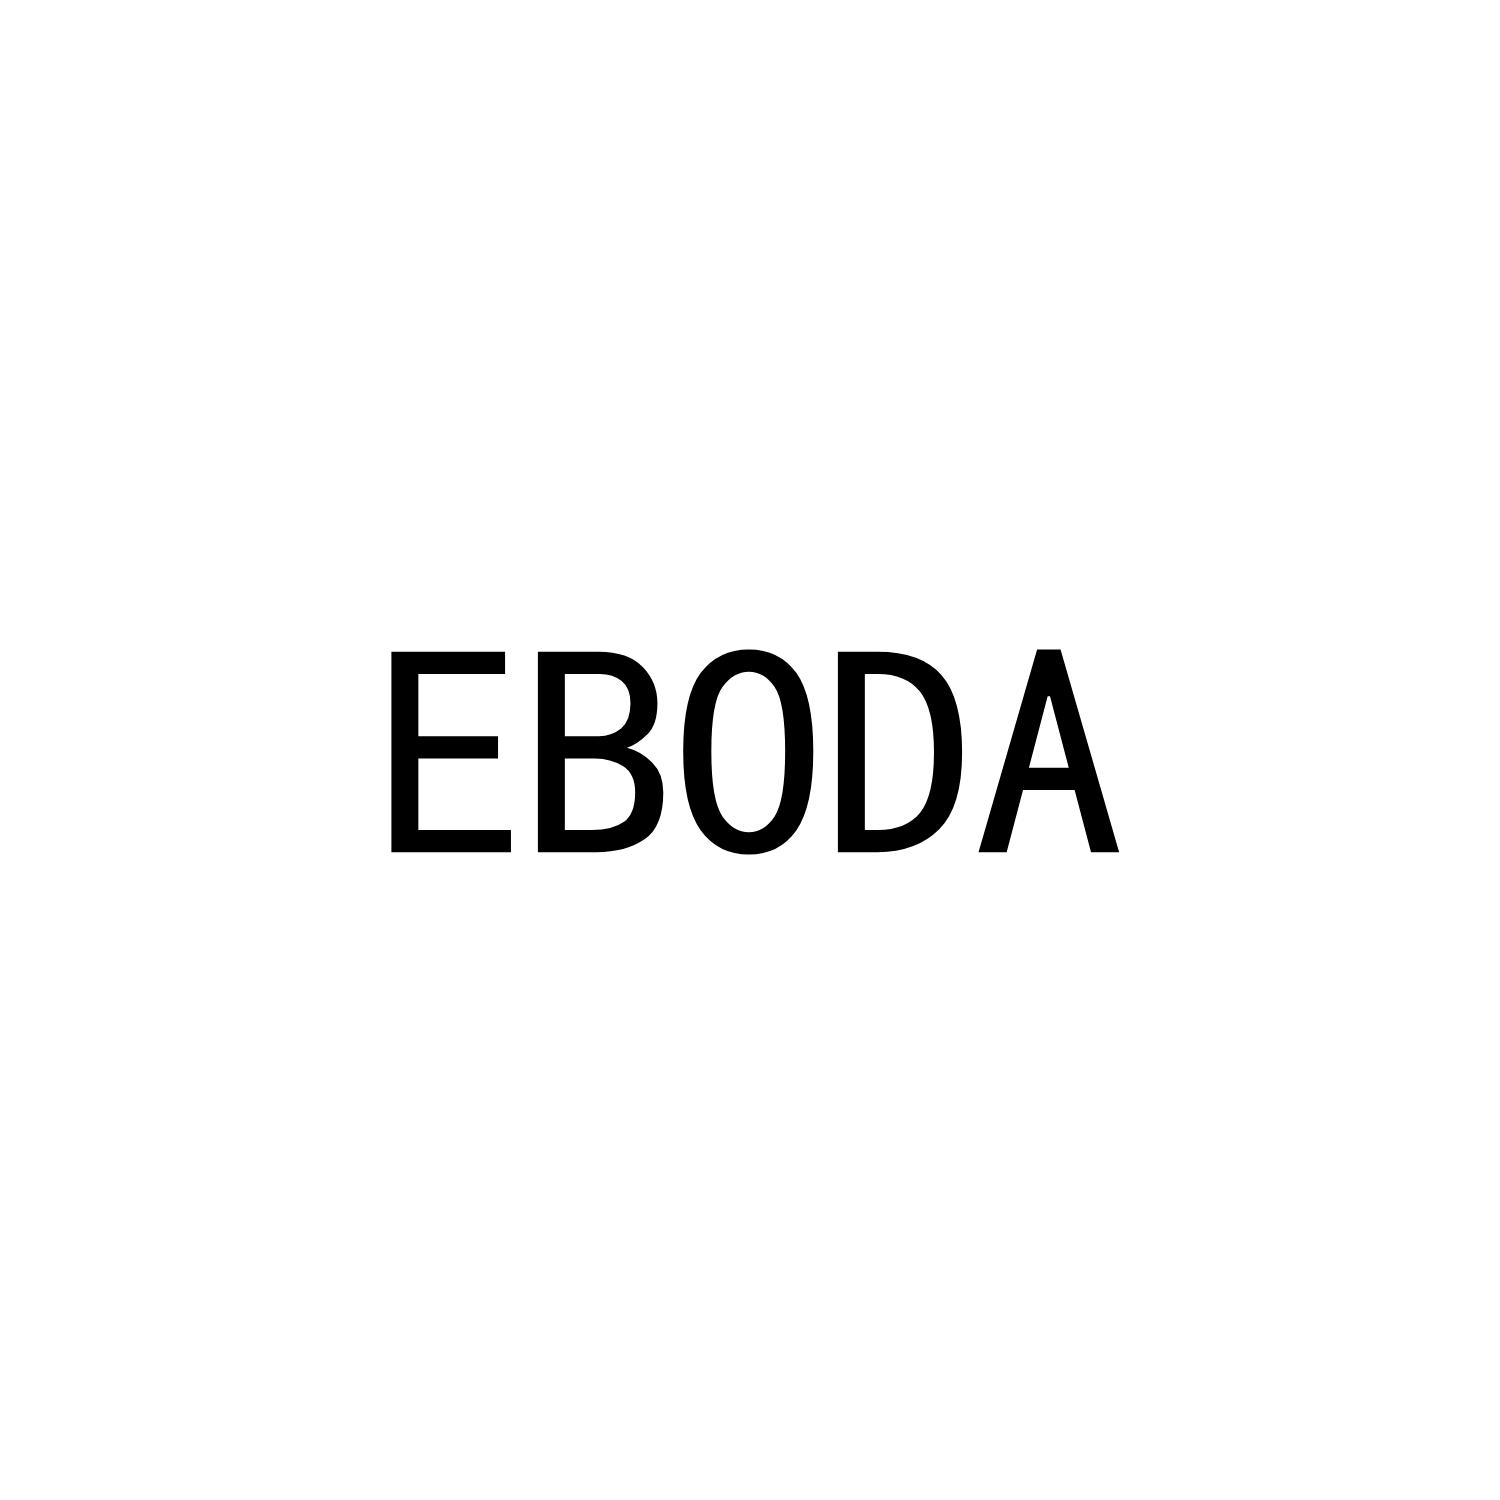 EBODA